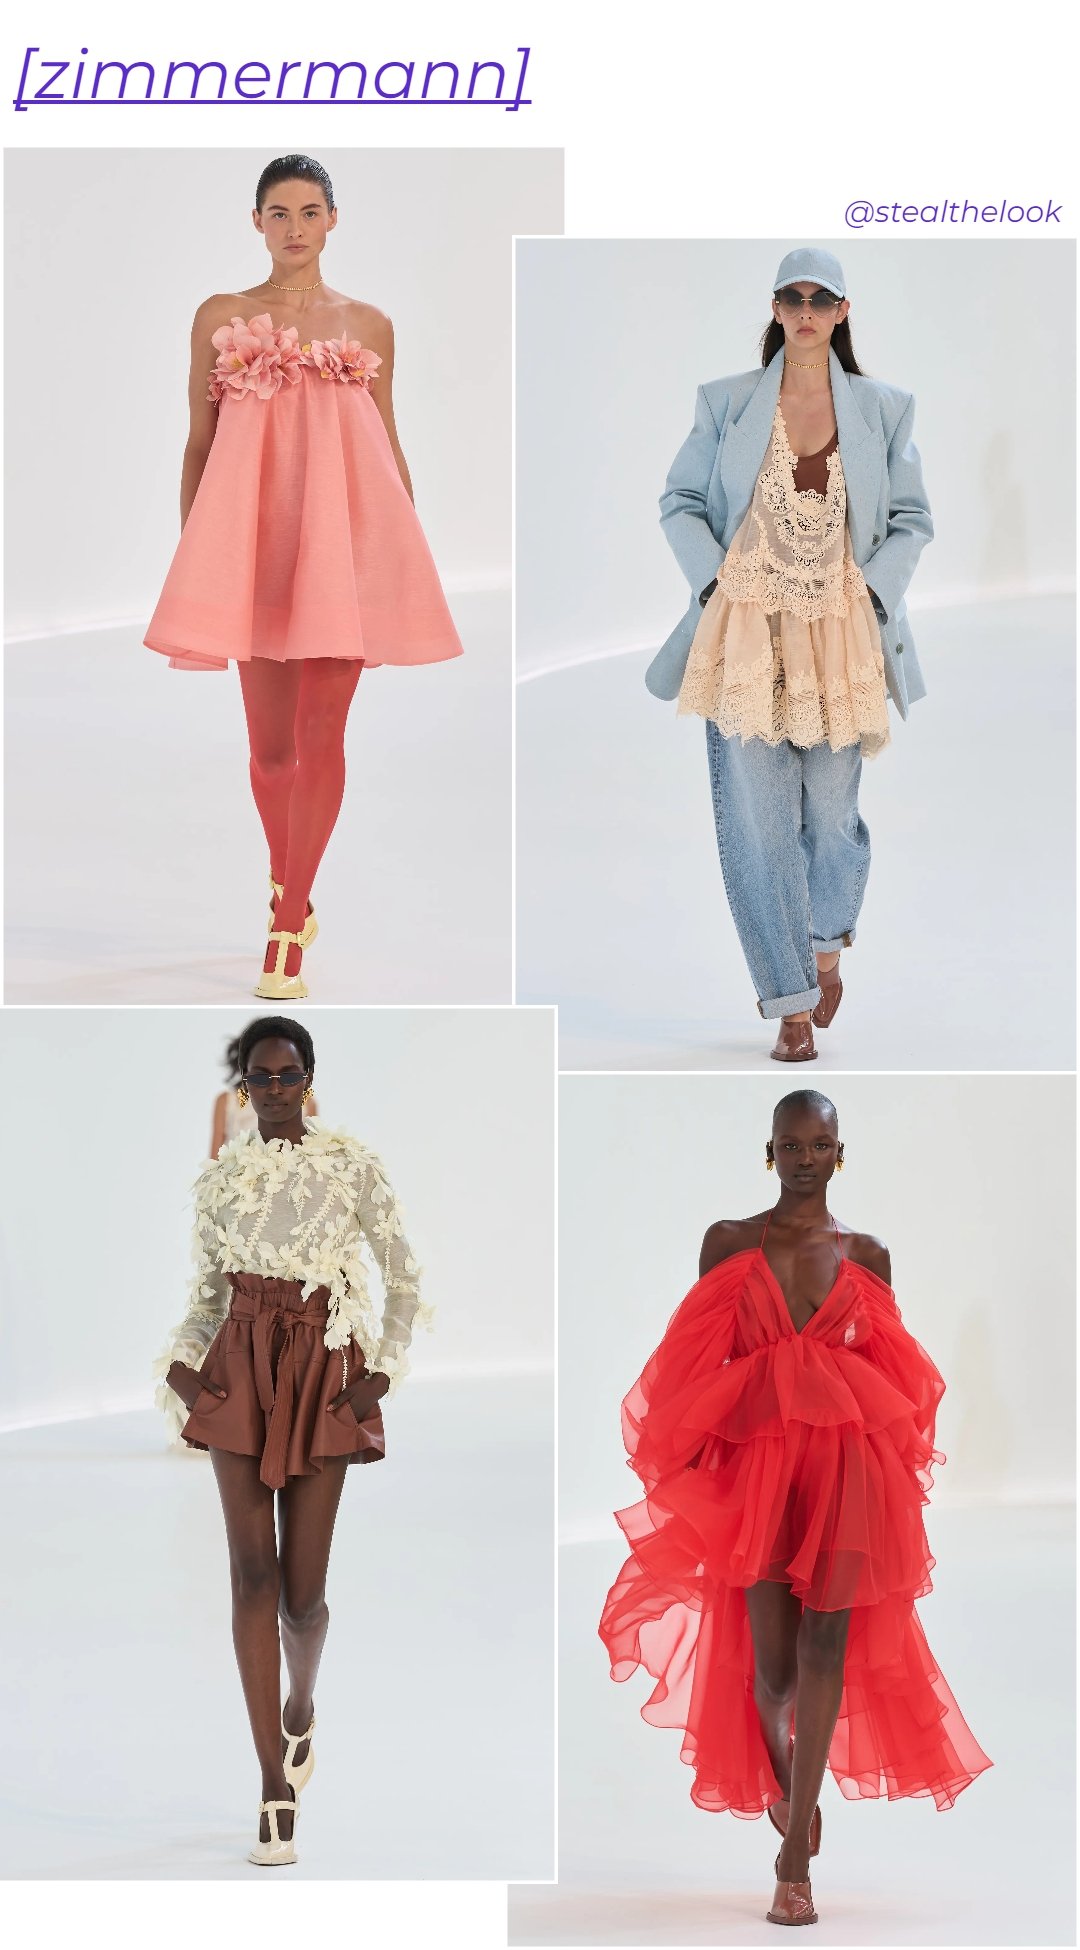 Zimmermann - roupas diversas - tendências de moda - verão - colagem de imagens - https://stealthelook.com.br